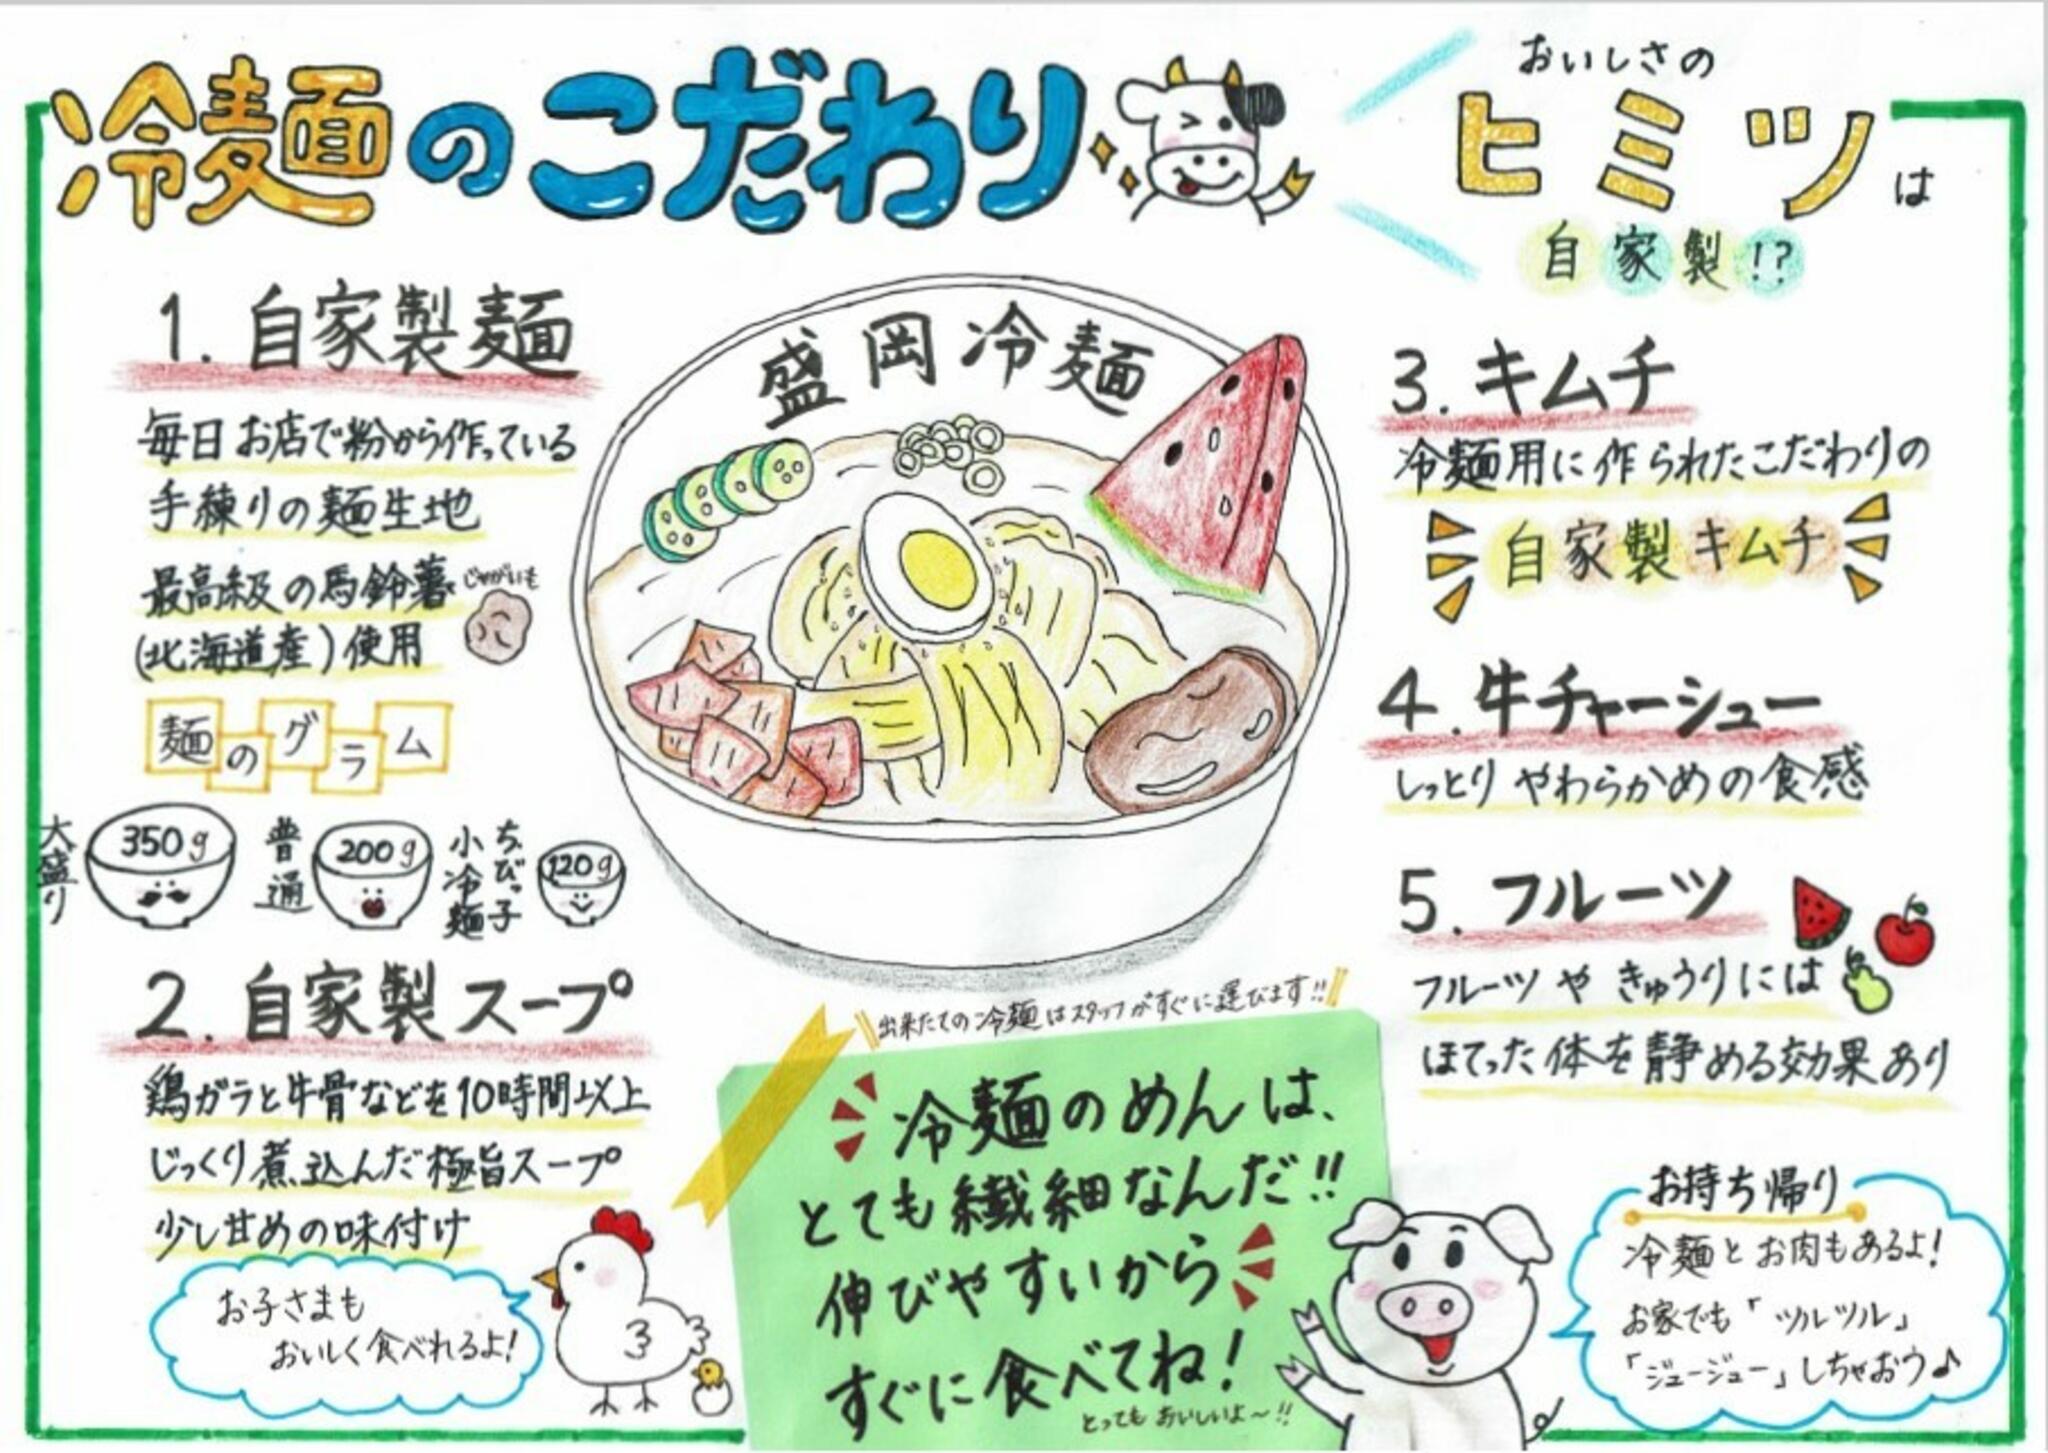 焼肉冷麺やまなか家 西多賀店からのお知らせ(盛岡冷麵のこだわり)に関する写真